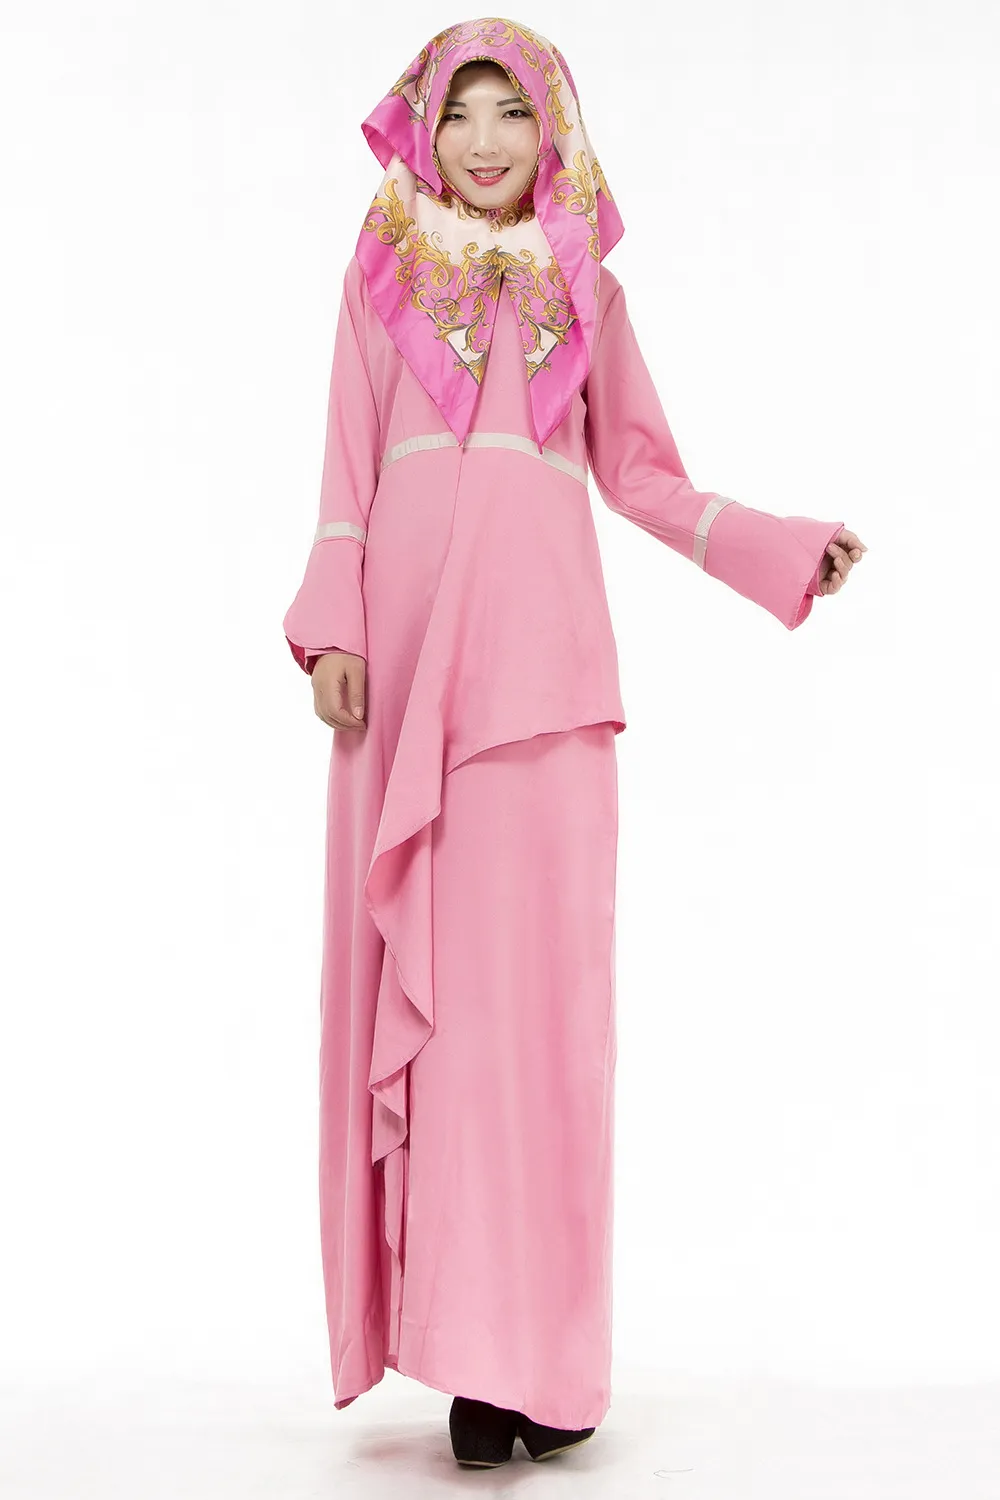 Мусульманские женские кафтан Абая Исламское платье О-образным вырезом с длинным рукавом империи талии шифон длина пола женская этническая одежда DK725MZ